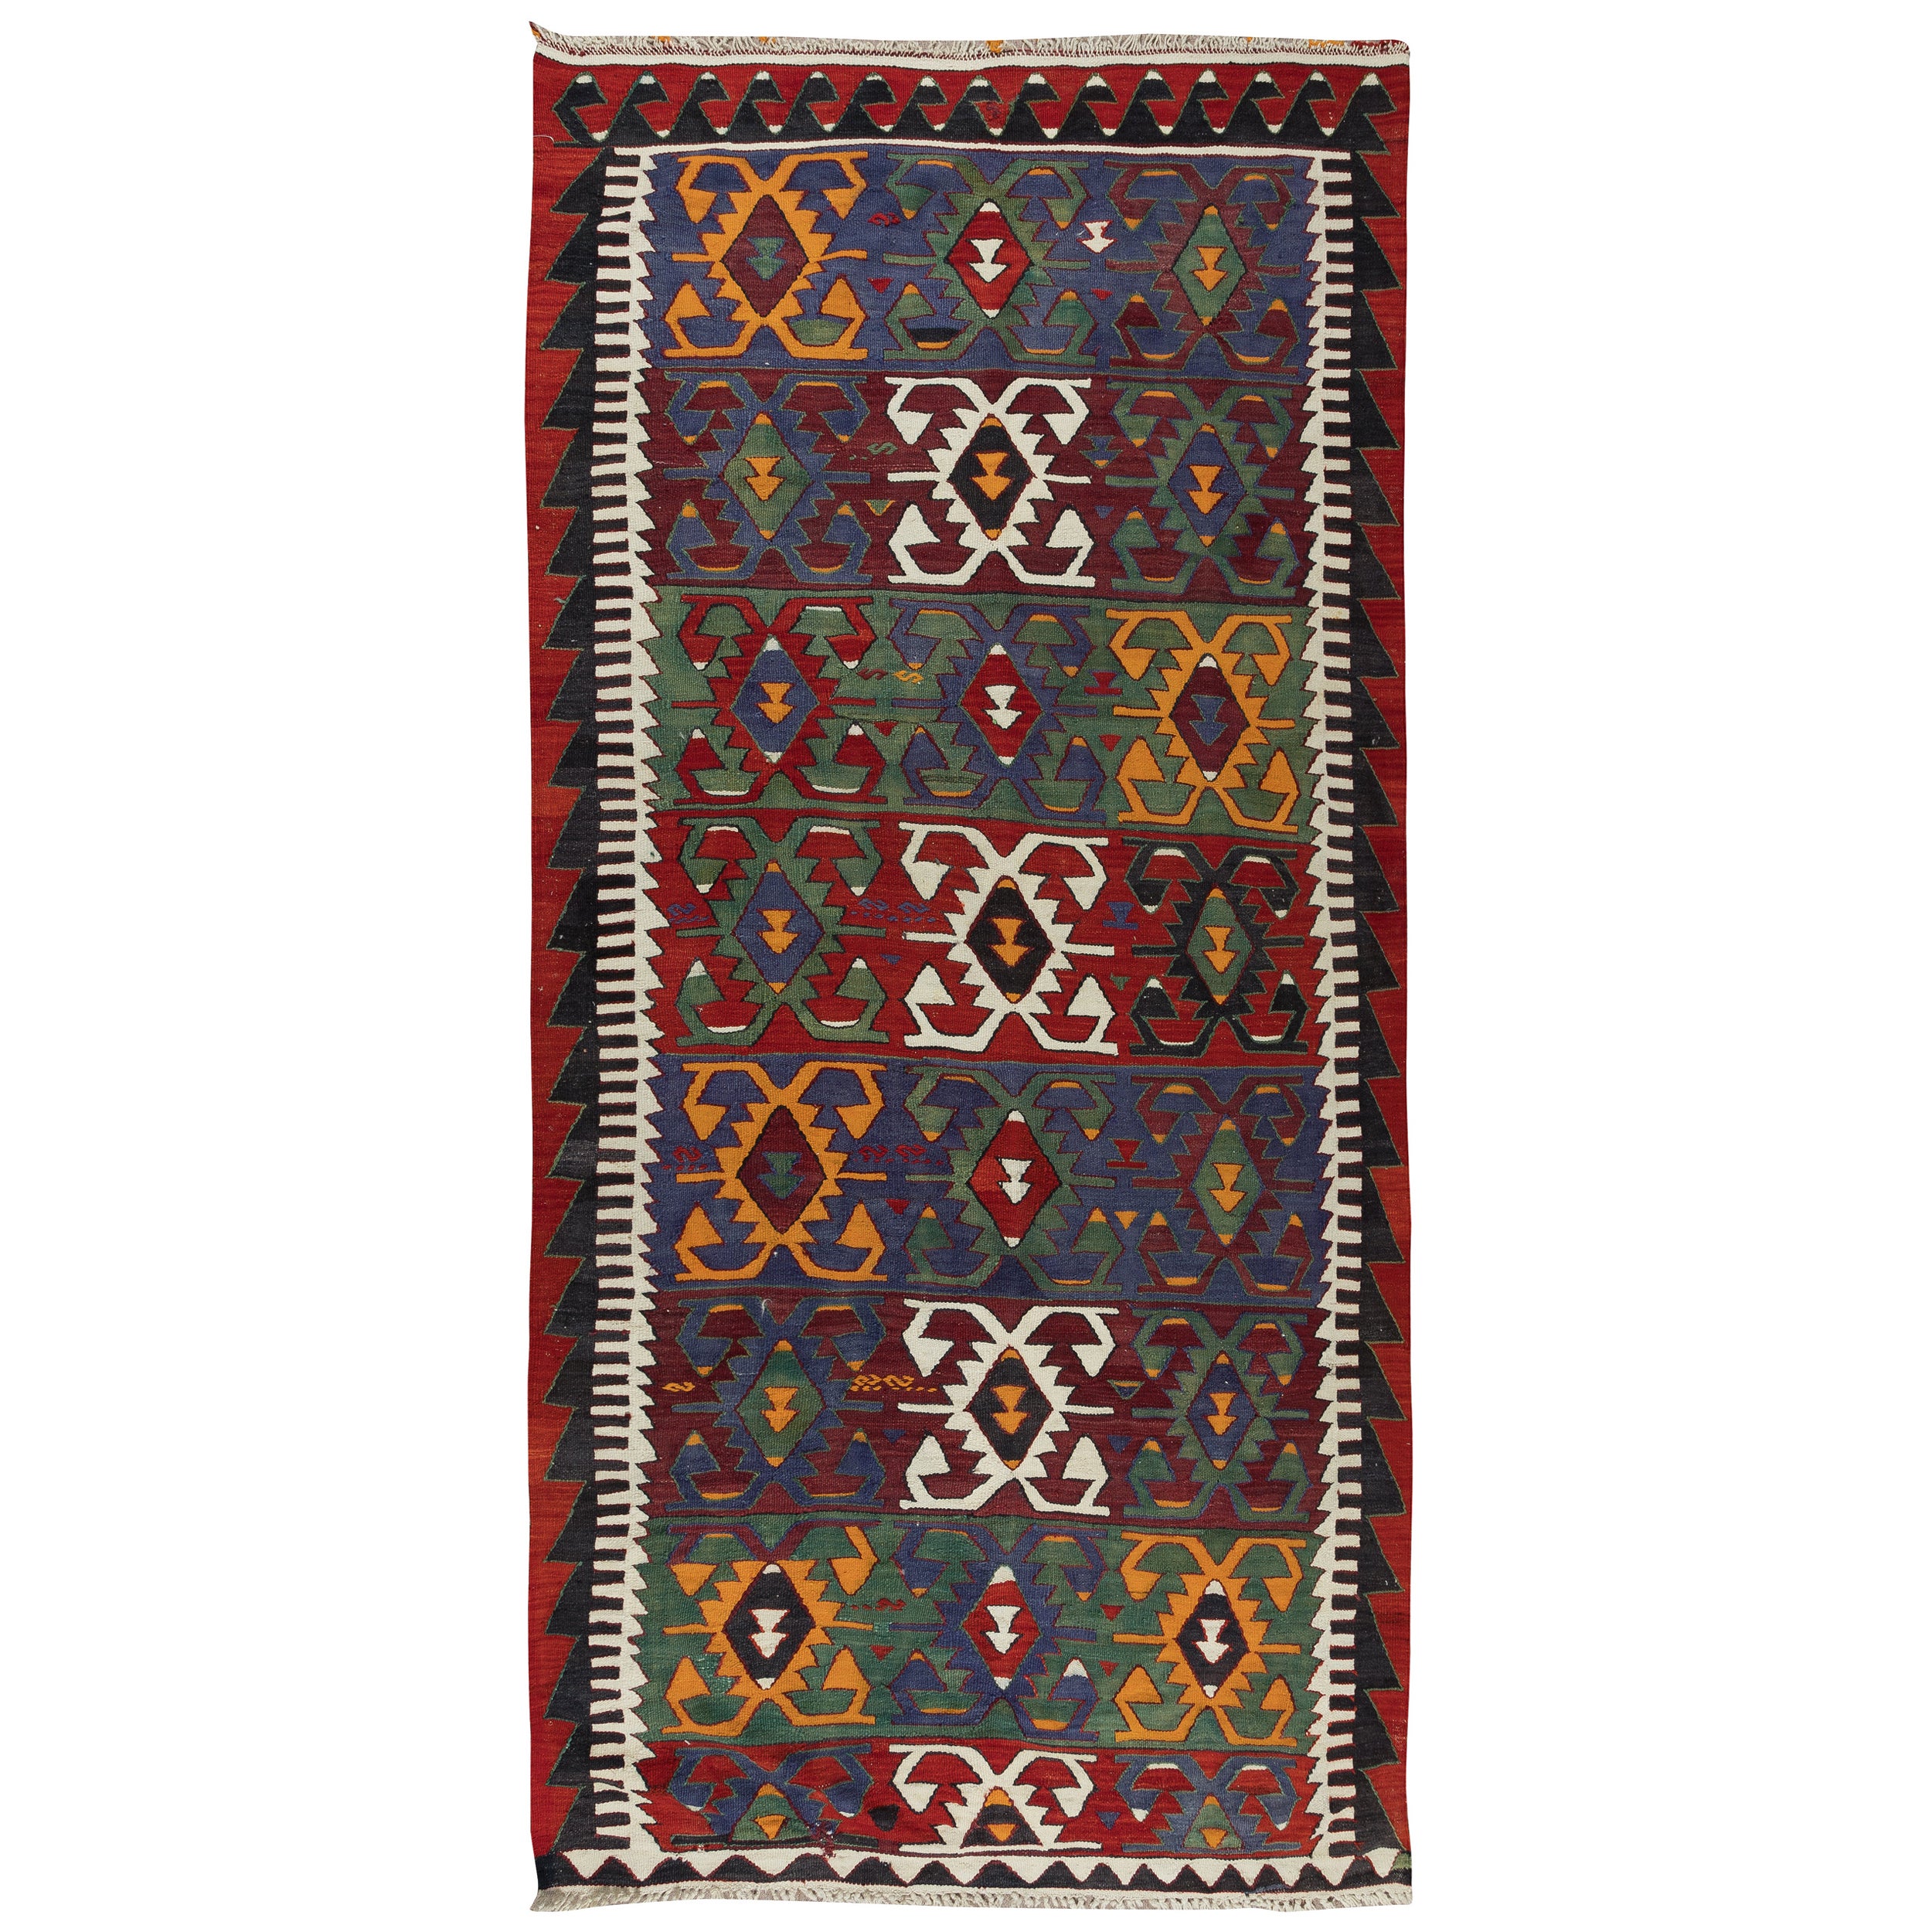 Colorful Vintage Handgewebter türkischer Kelim, Flachgewebe-Teppich, 100% Wolle, 5,4x10.8 Ft, farbenfroher Vintage